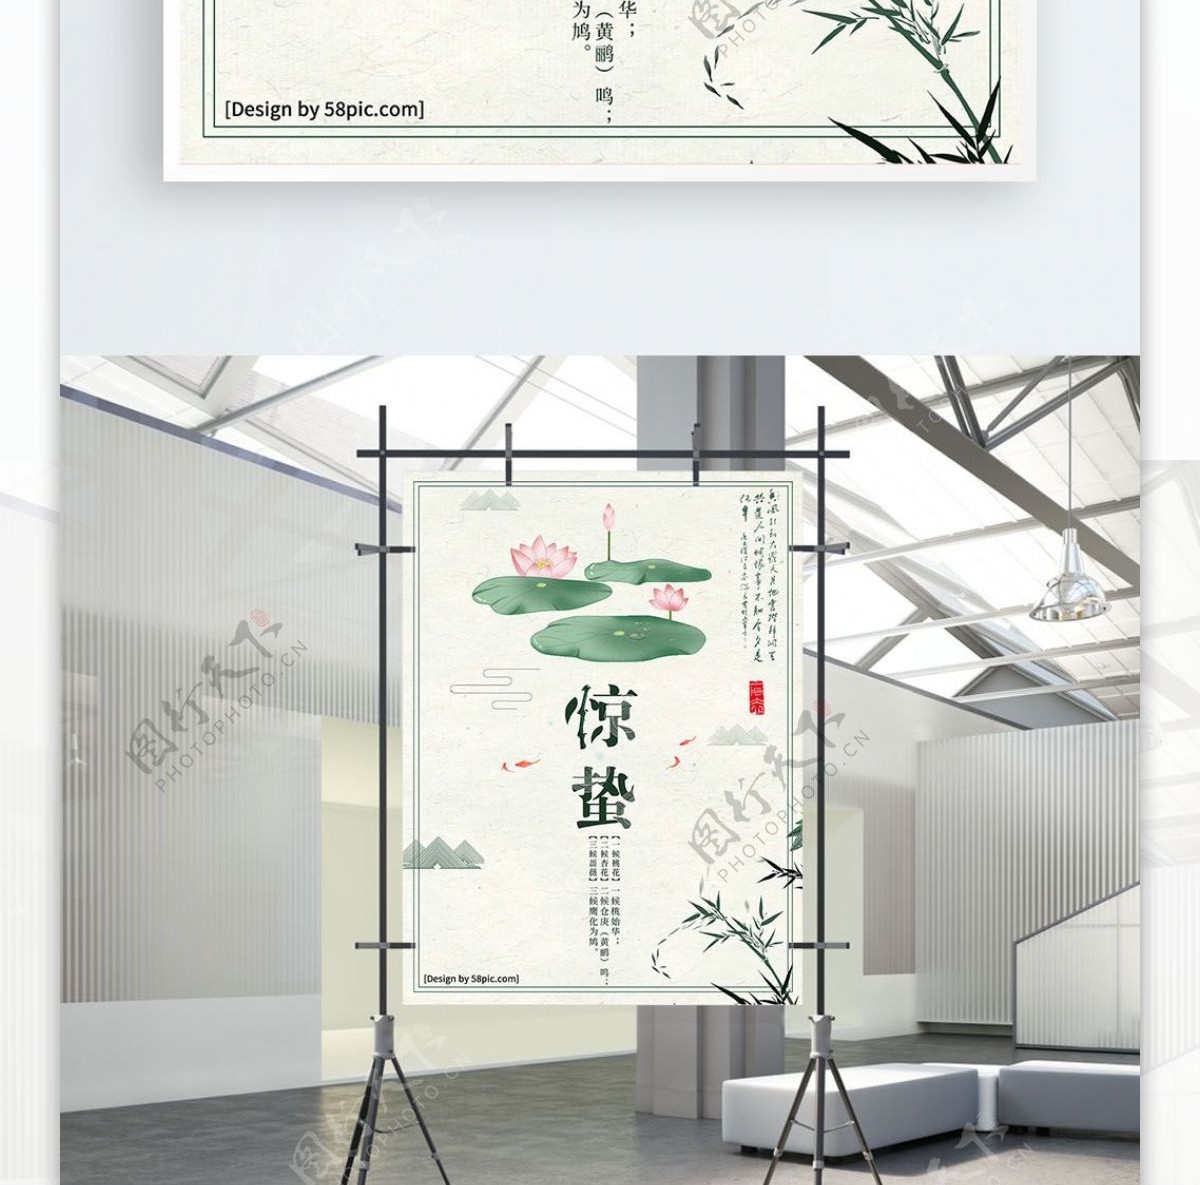 白色简约手绘中国风惊蛰节气宣传海报